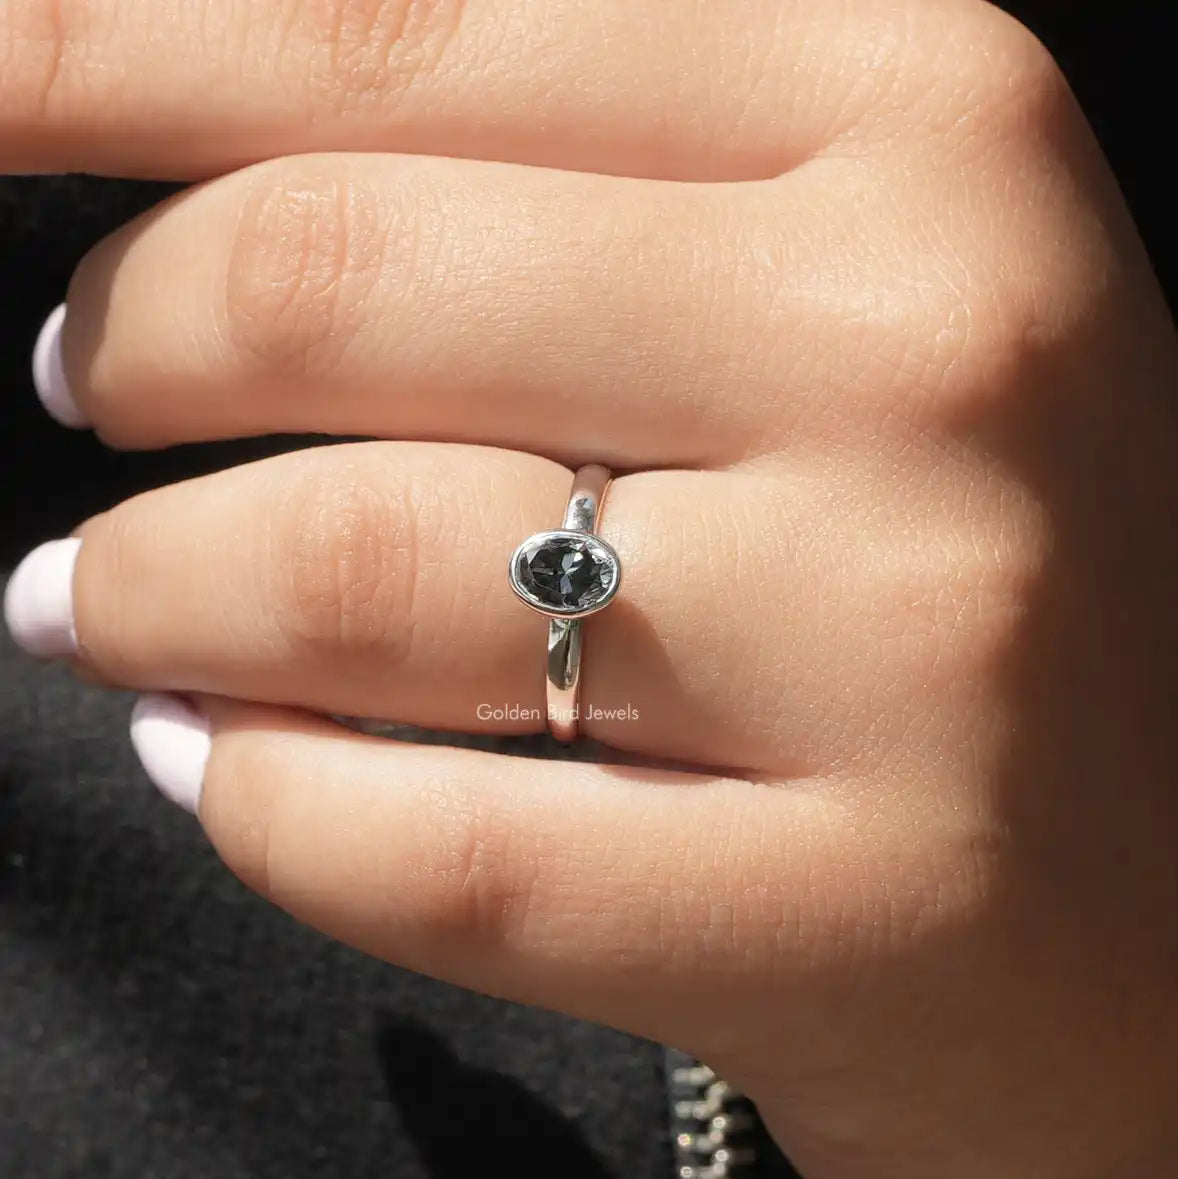 [In finger front view of dark gray wedding ring set]-[Golden Bird Jewels]